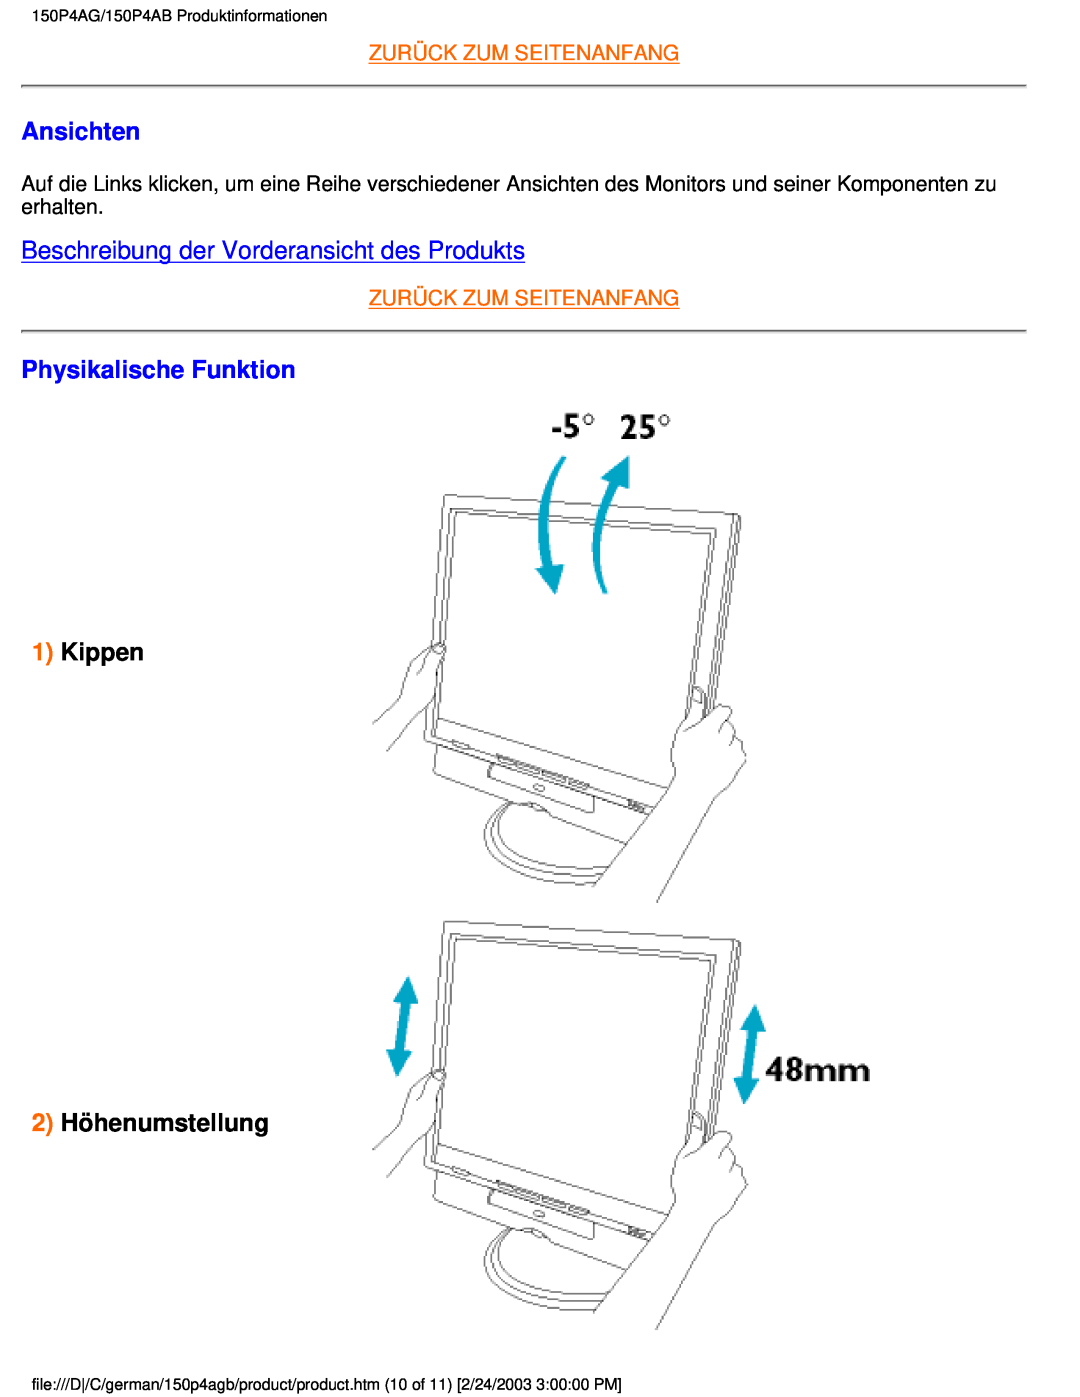 Philips 150P4AG Ansichten, Beschreibung der Vorderansicht des Produkts, Physikalische Funktion, Kippen 2 Höhenumstellung 